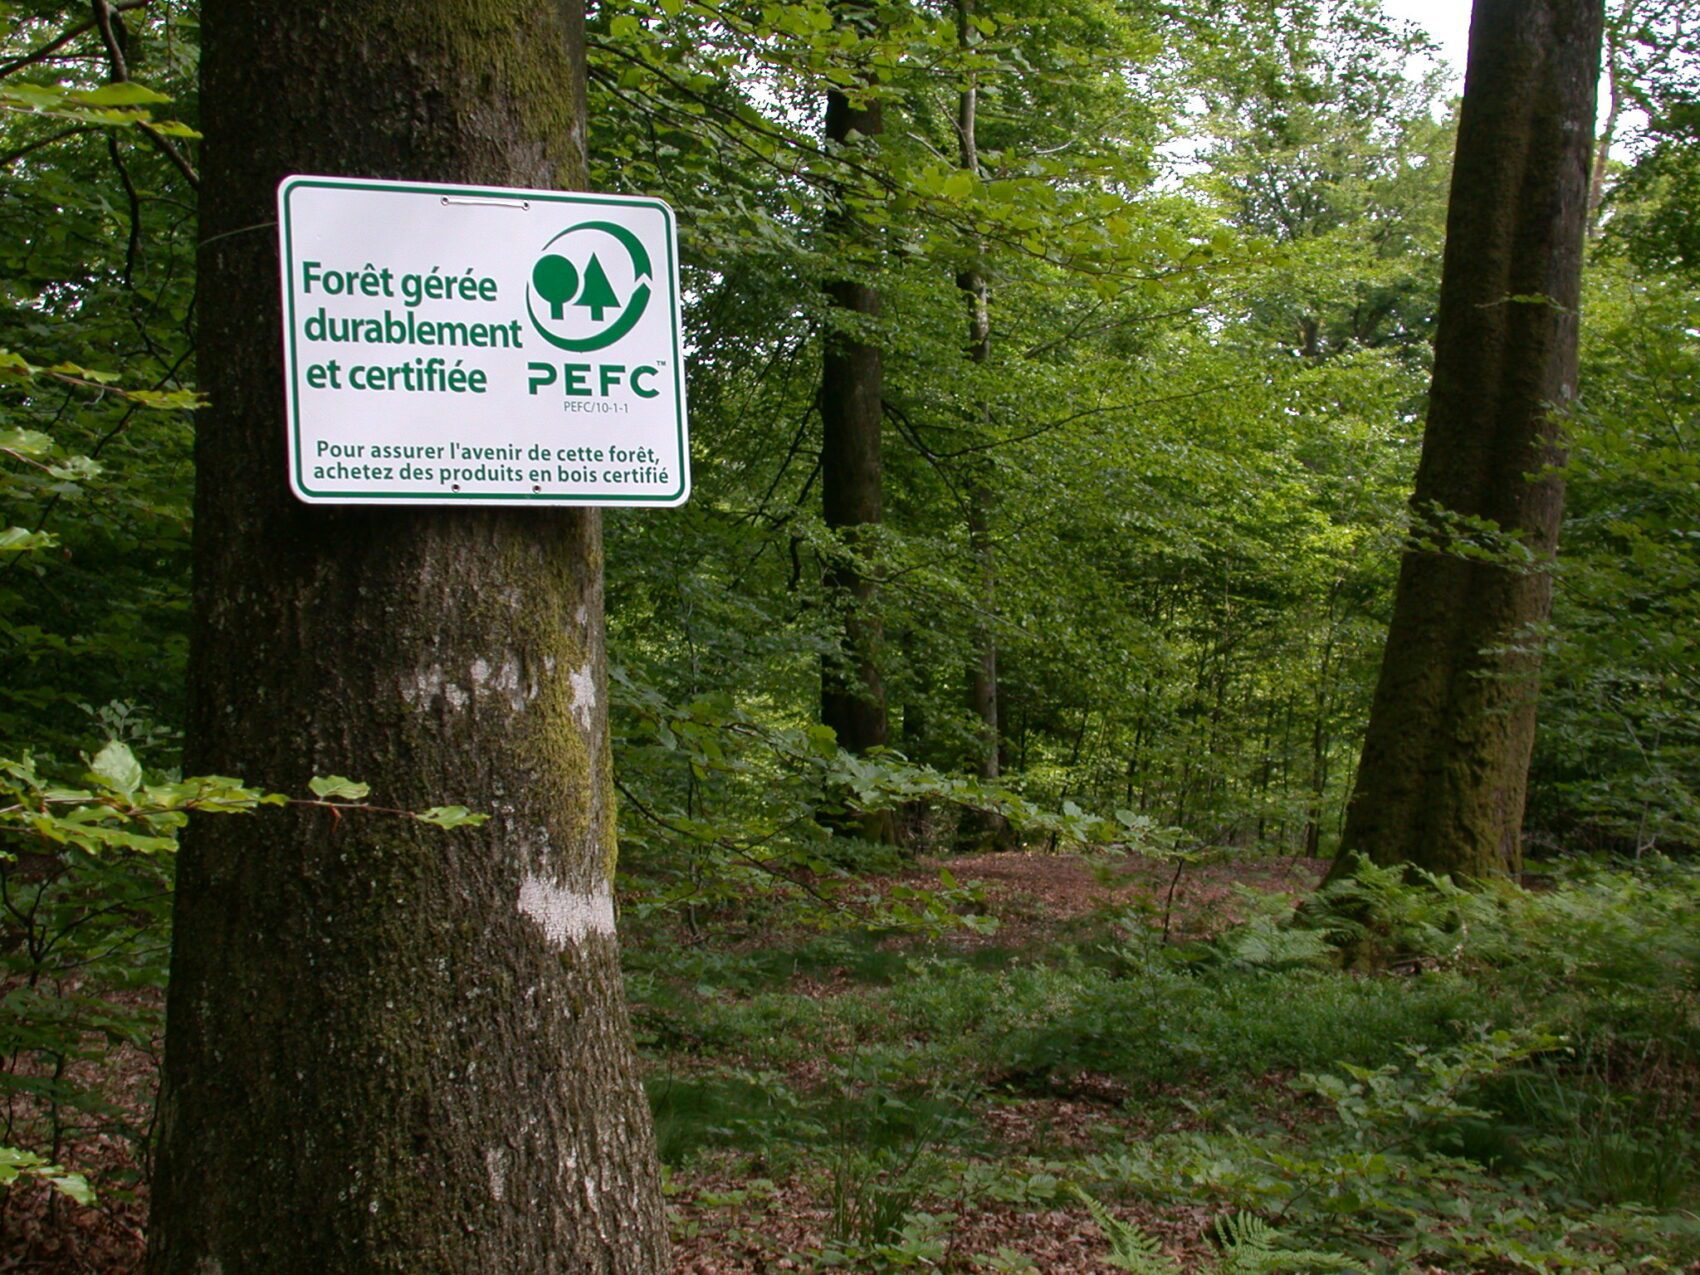 Boom met PEFC-teken. Dit bos wordt duurzaam beheerd